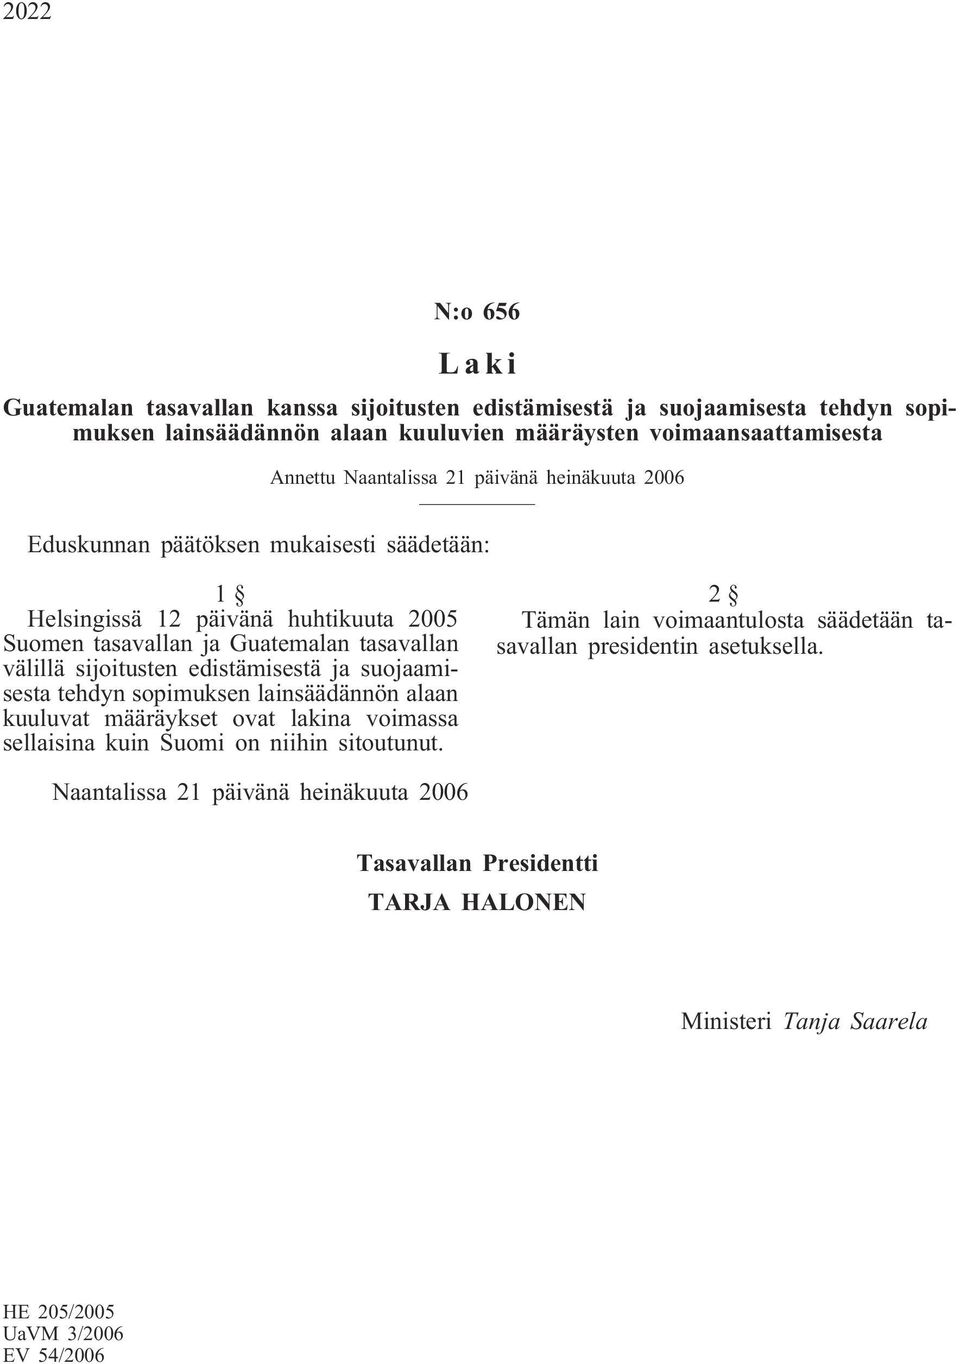 sijoitusten edistämisestä ja suojaamisesta tehdyn sopimuksen lainsäädännön alaan kuuluvat määräykset ovat lakina voimassa sellaisina kuin Suomi on niihin sitoutunut.